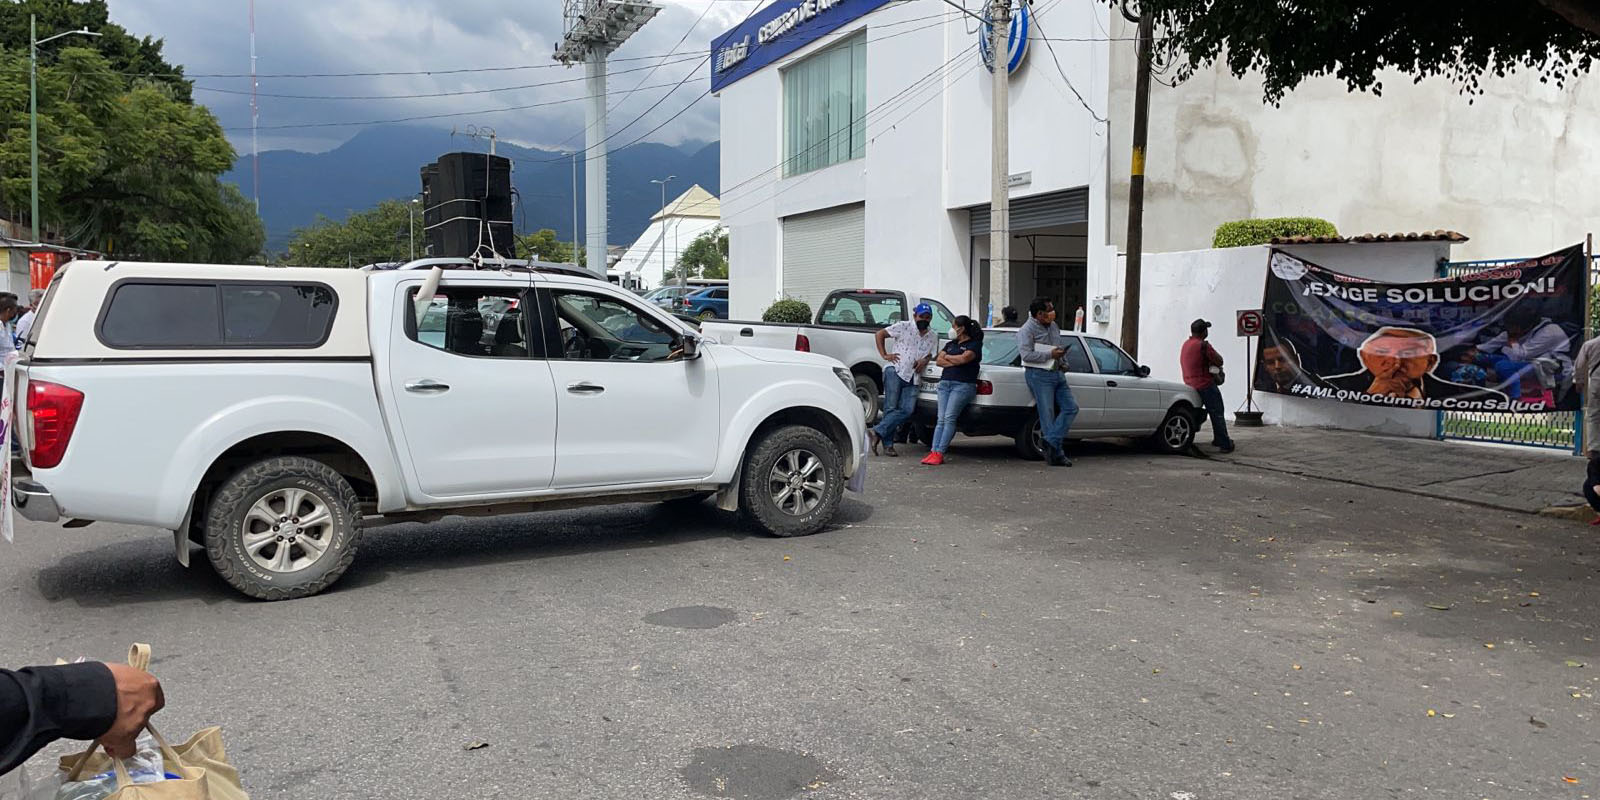 Durante protestas en sus oficinas, obliga a trabajadores a asistir a oficinas | El Imparcial de Oaxaca